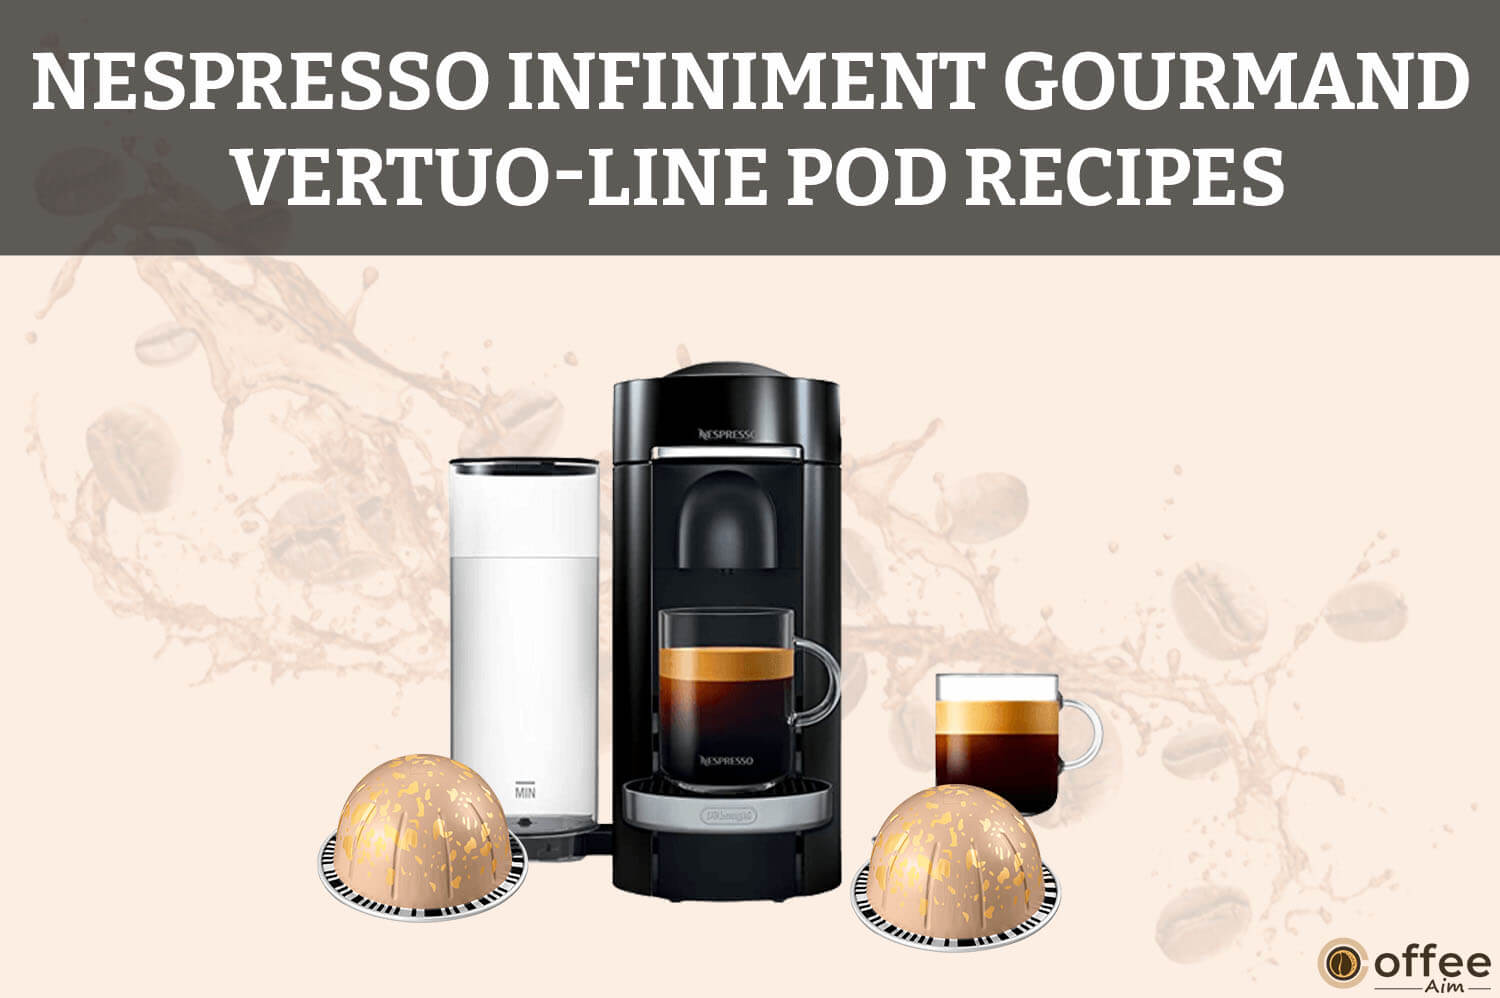 Nespresso-Infiniment-Gourmand-Vertuo-Line-Pod-Recipes